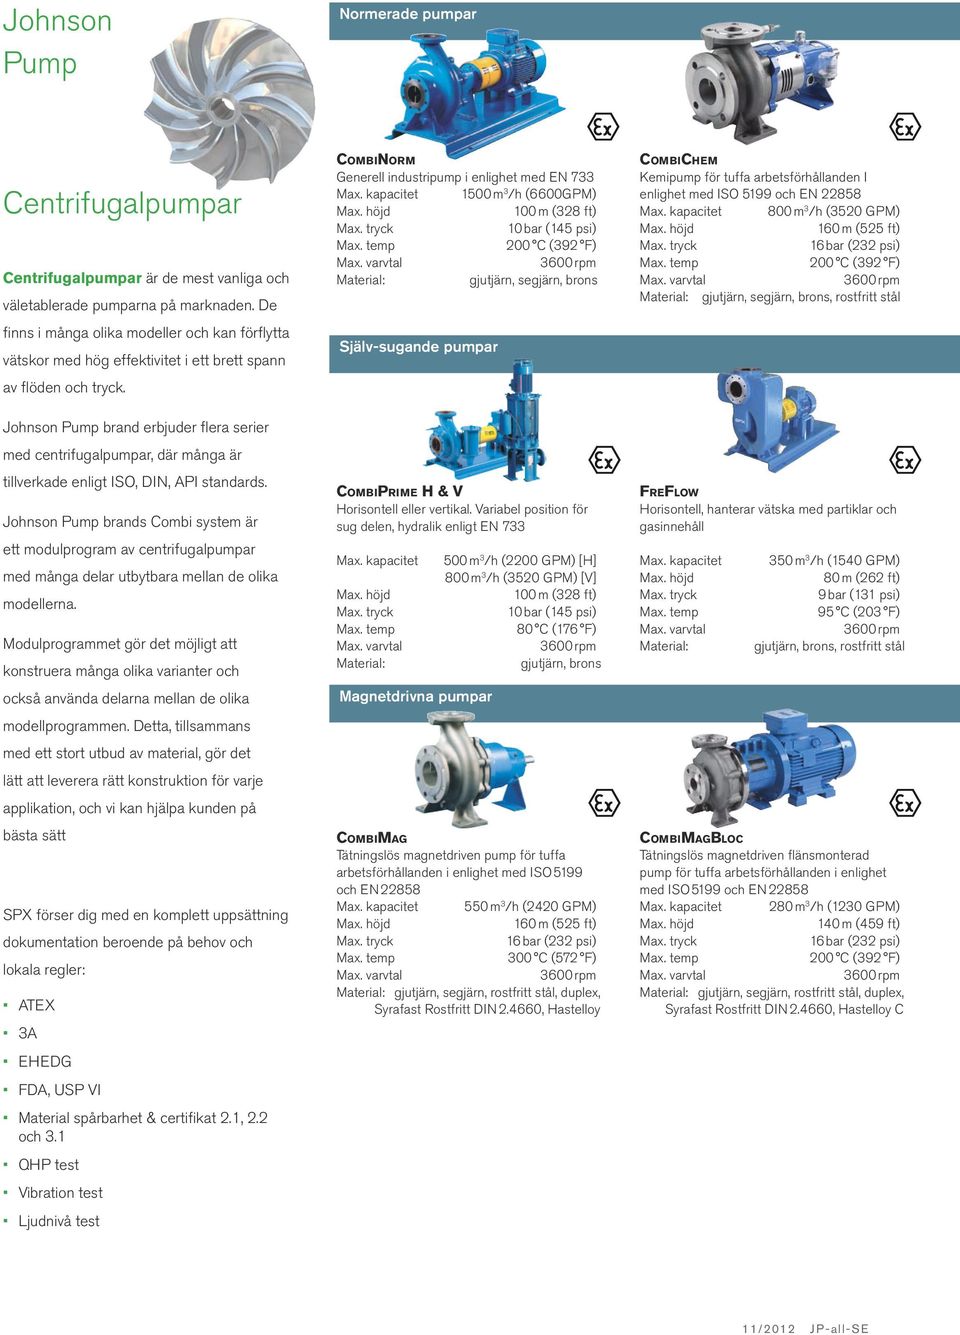 Johnson Pump brand erbjuder flera serier med centrifugalpumpar, där många är tillverkade enligt ISO, DIN, API standards.